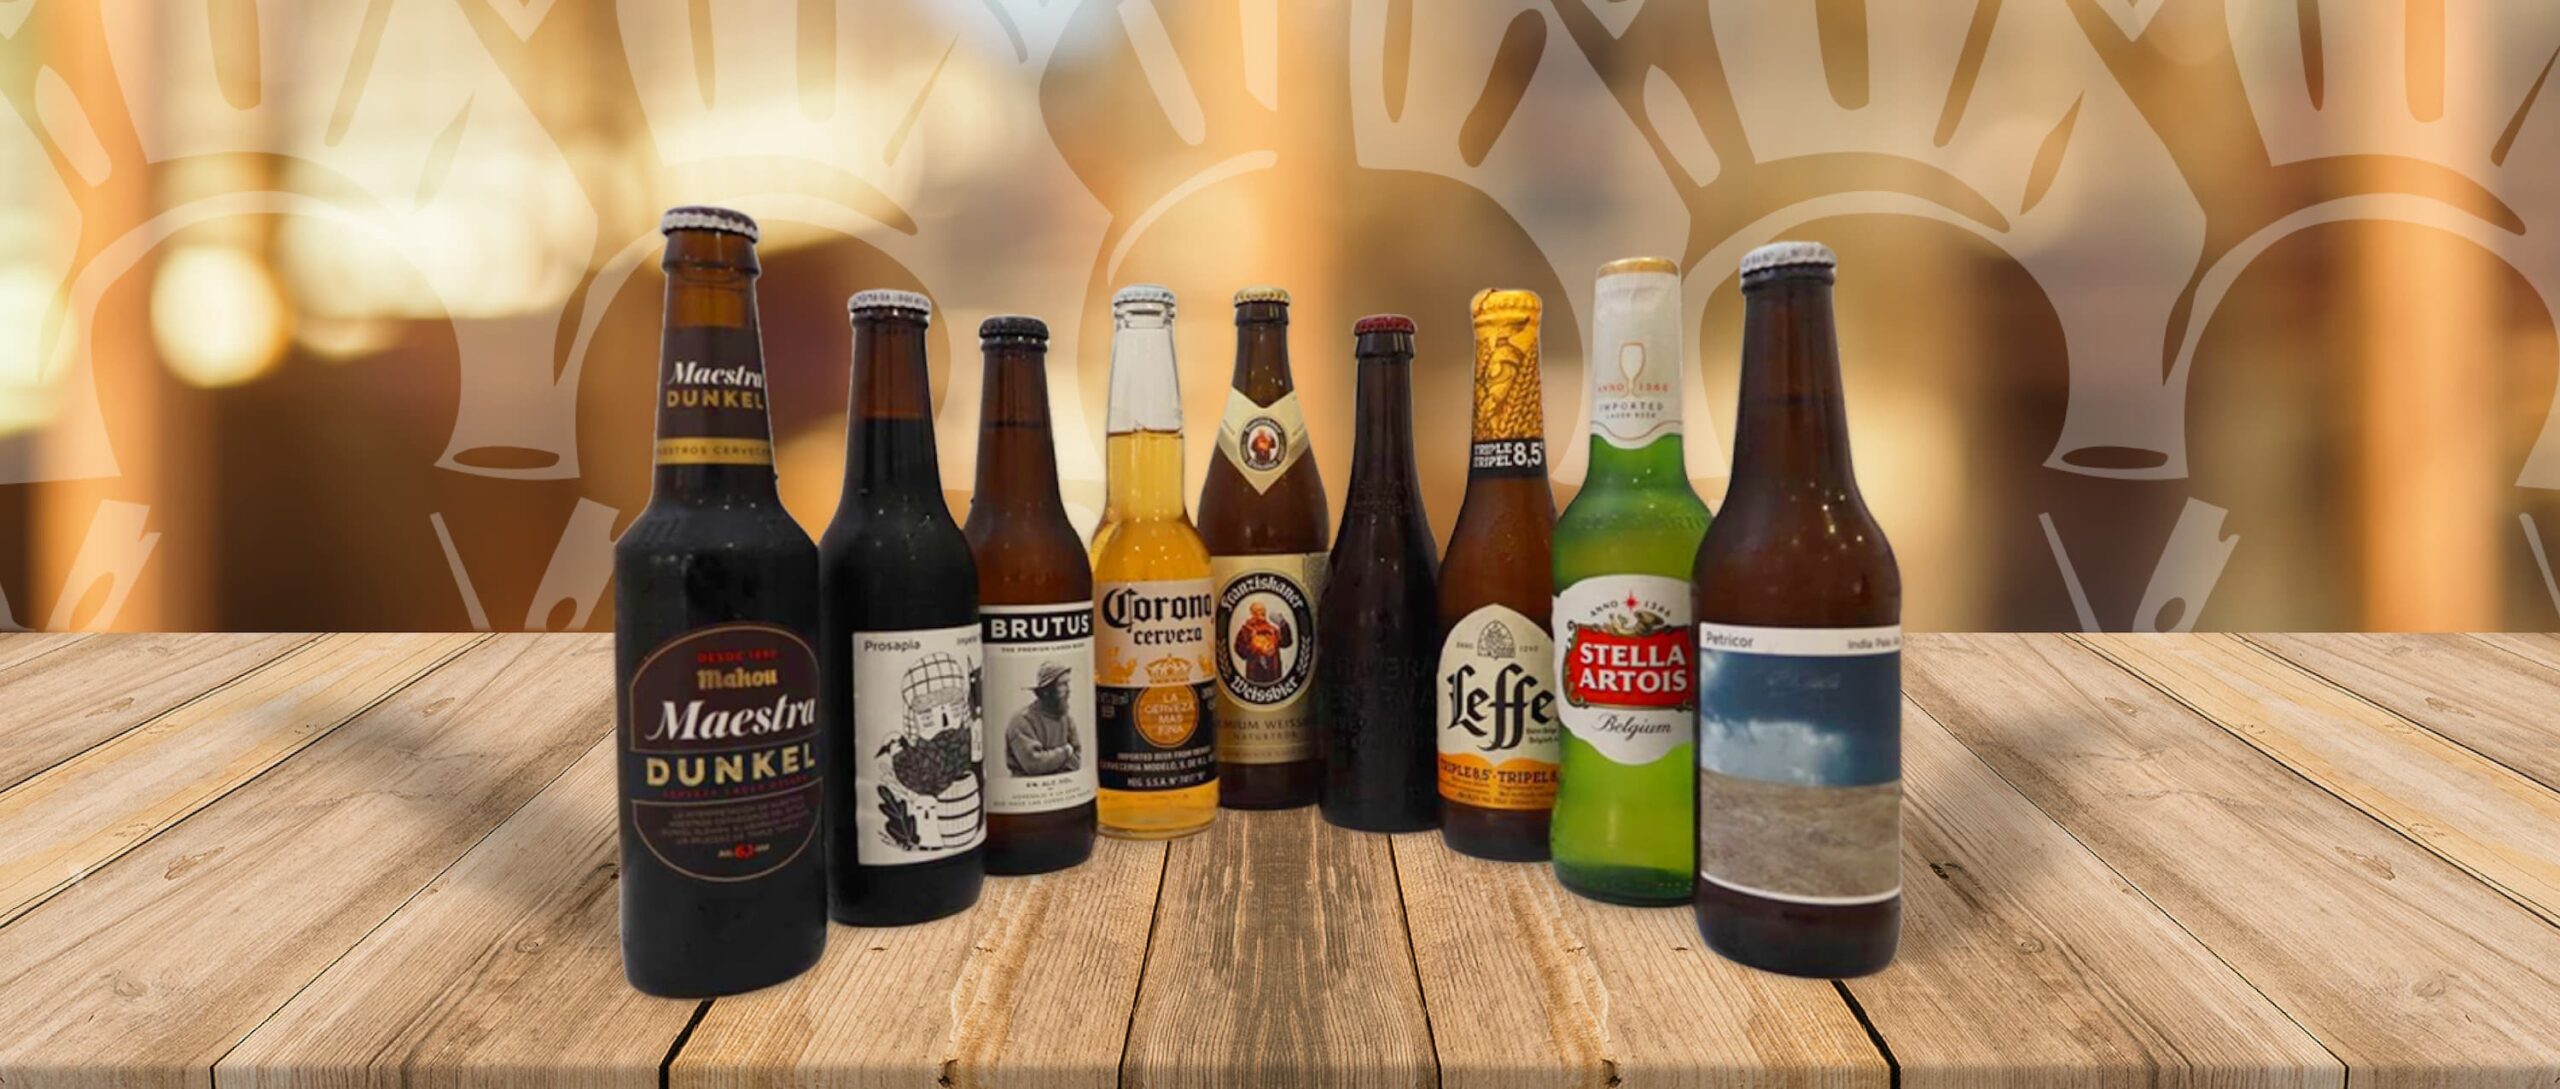 Bar Los Chopos cuenta con una amplia carta de cervezas artesanas